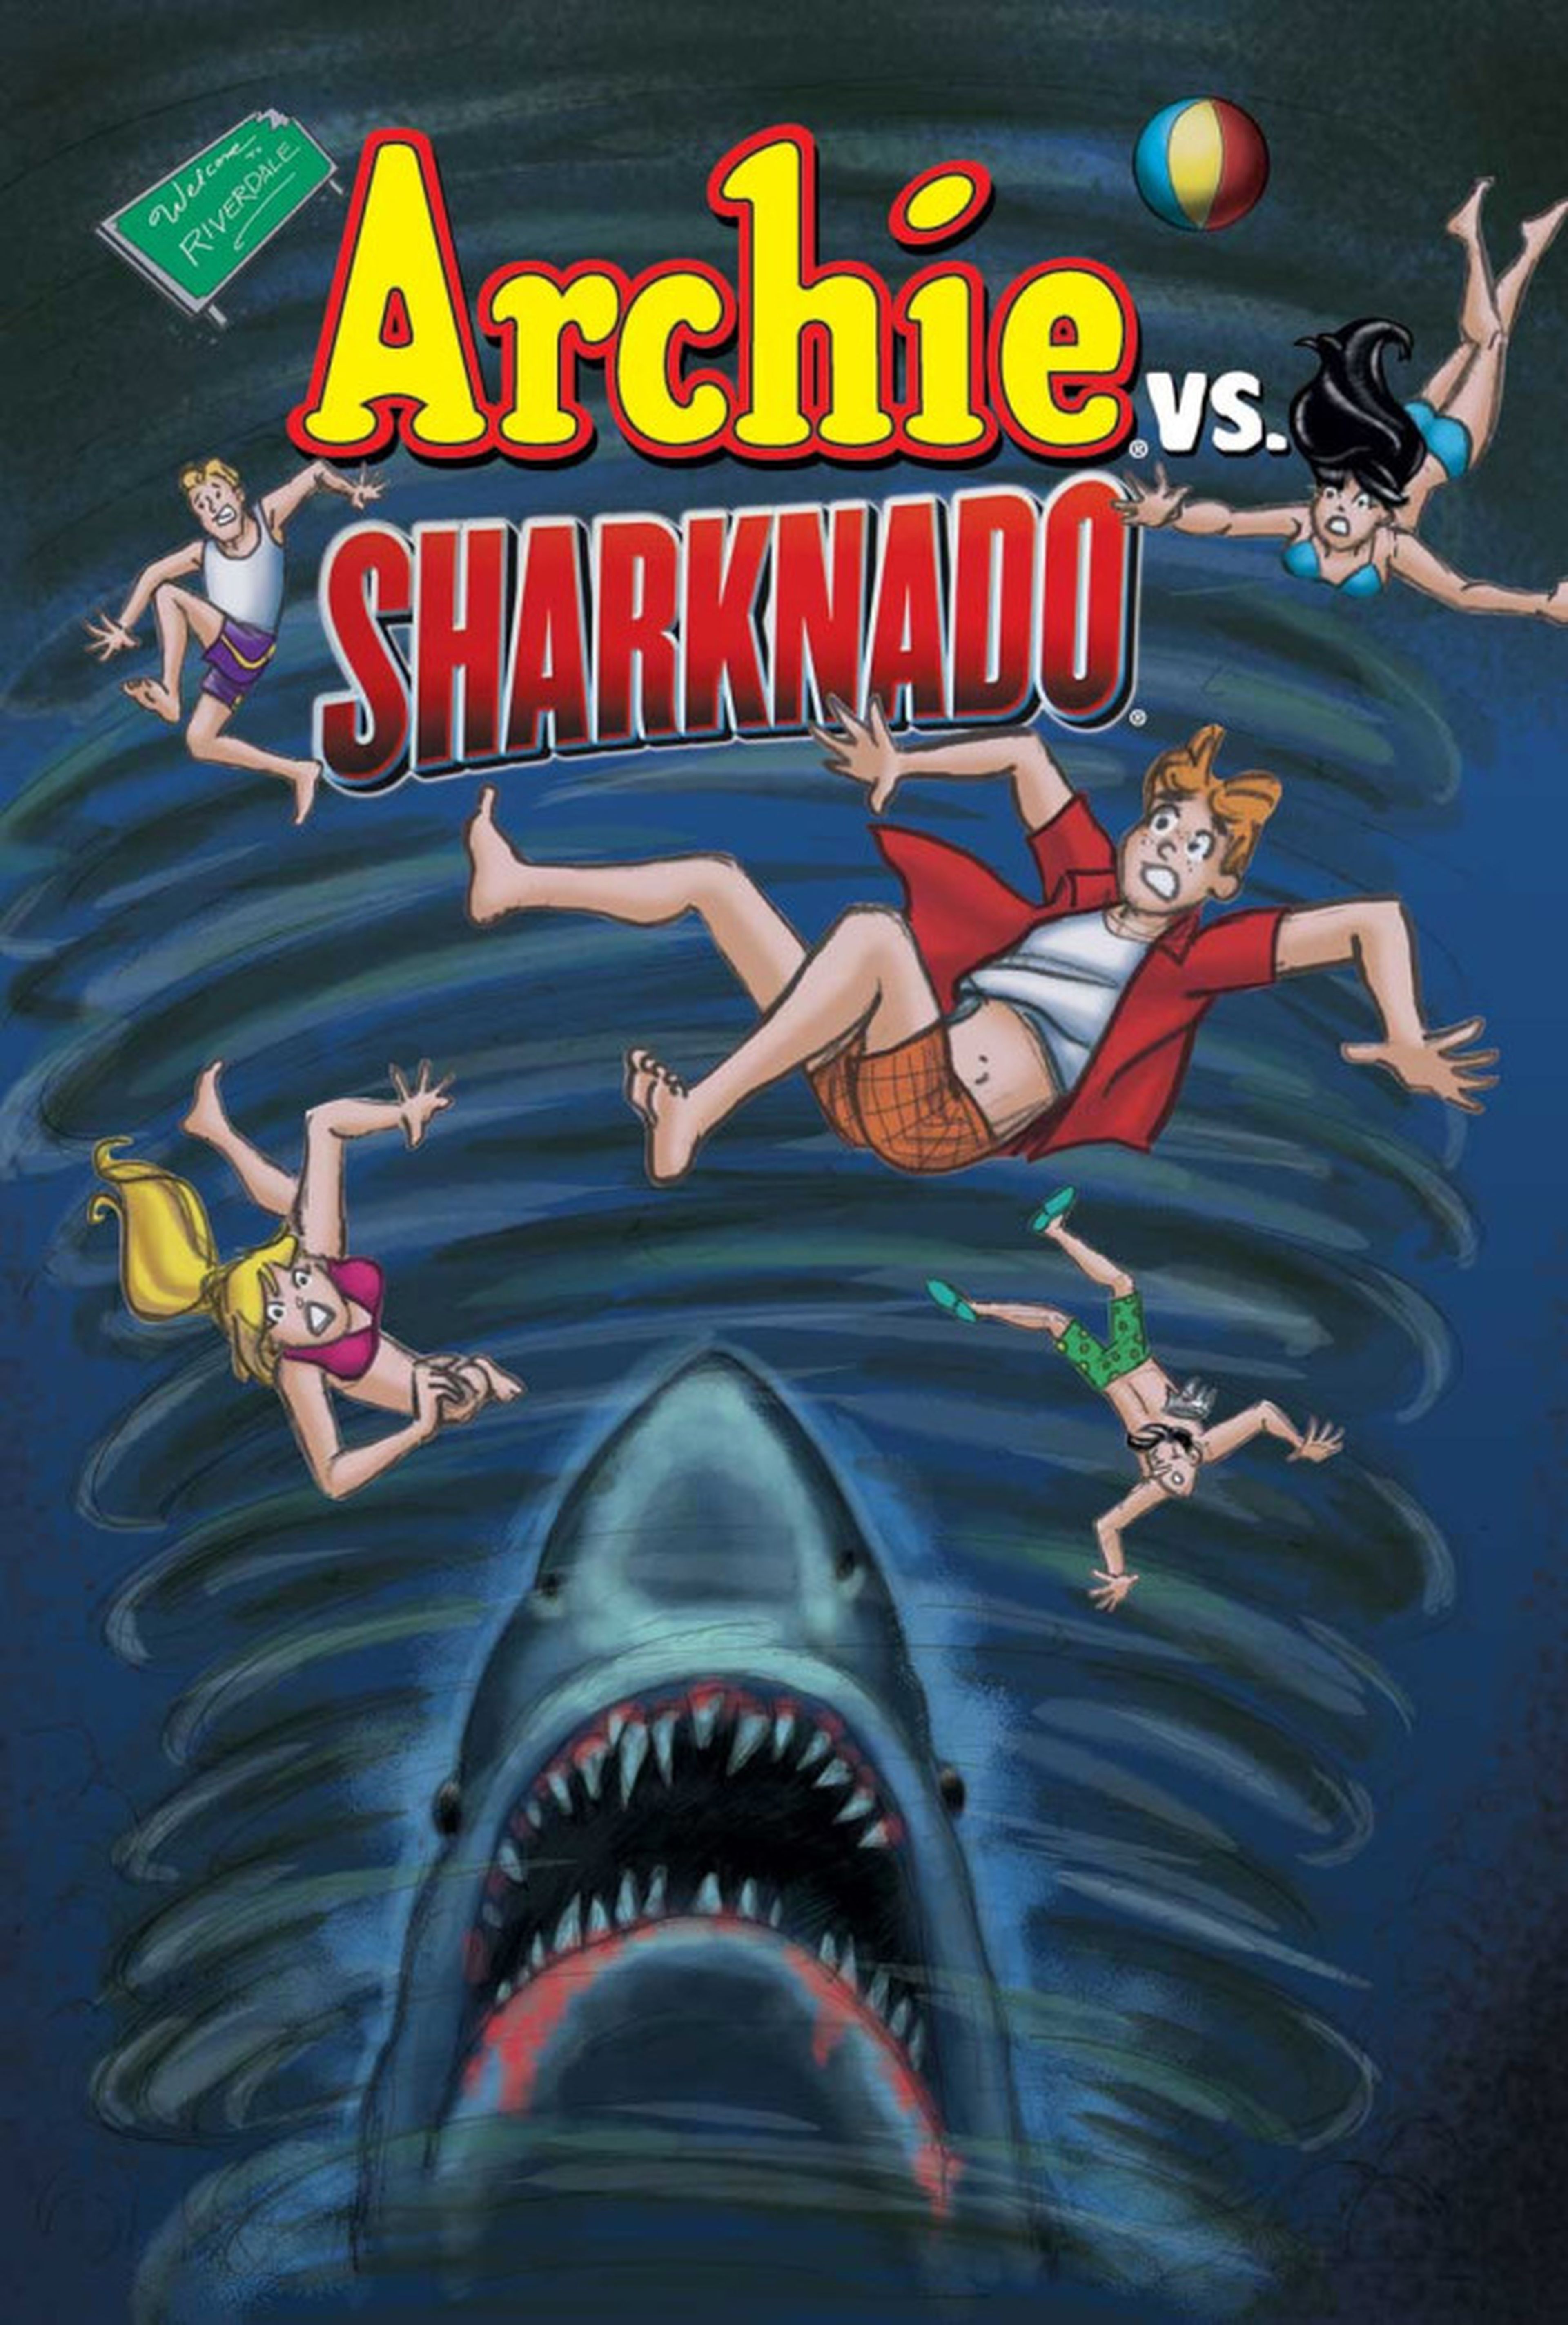 Sharknado contra Archie. ¿El cómic crossover definitivo?